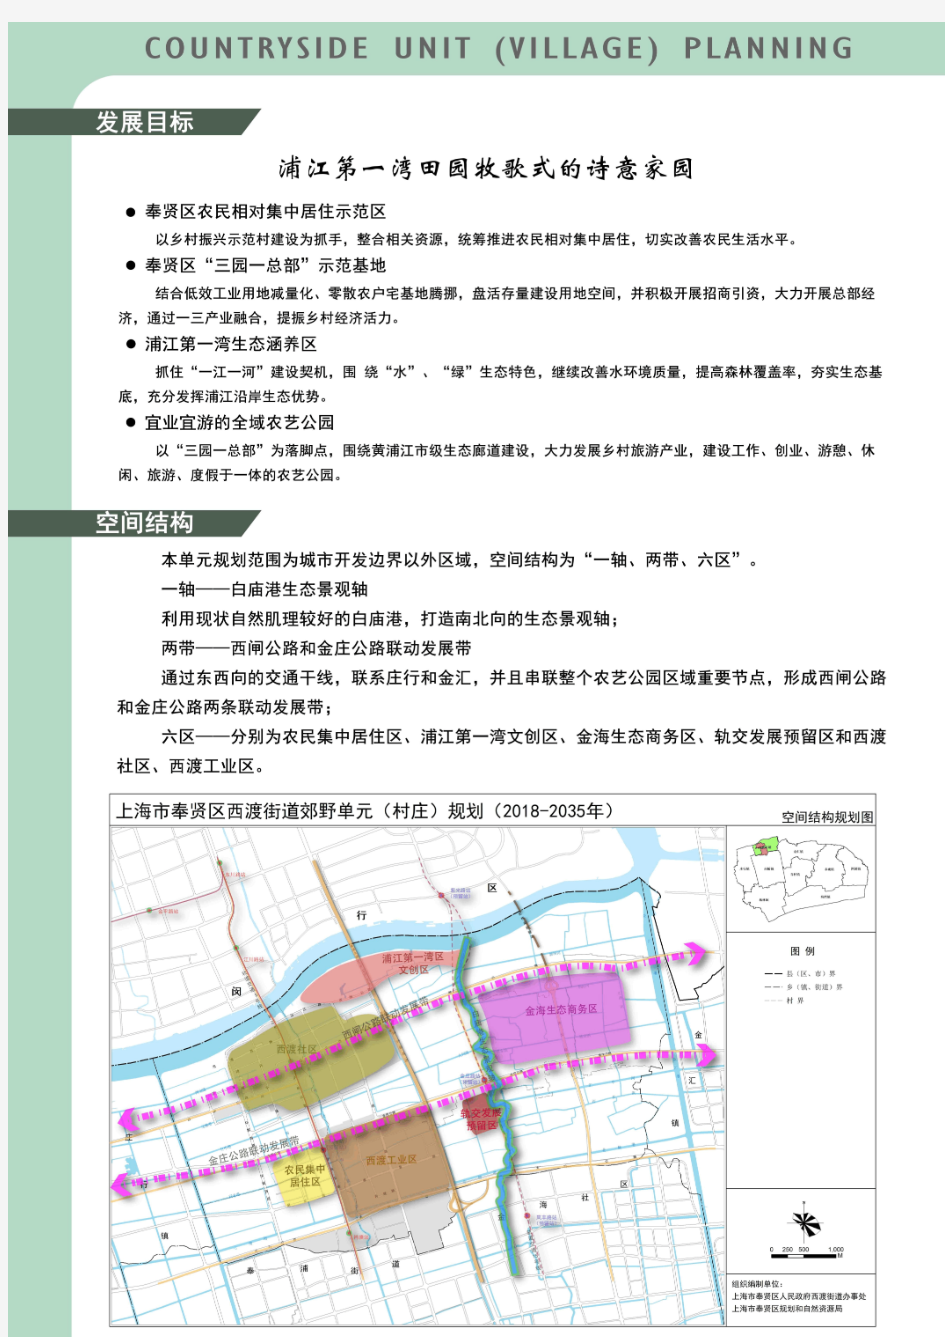 20200416 《上海市奉贤区西渡街道郊野单元(村庄)规划(2018-2035年)》初步方案公示